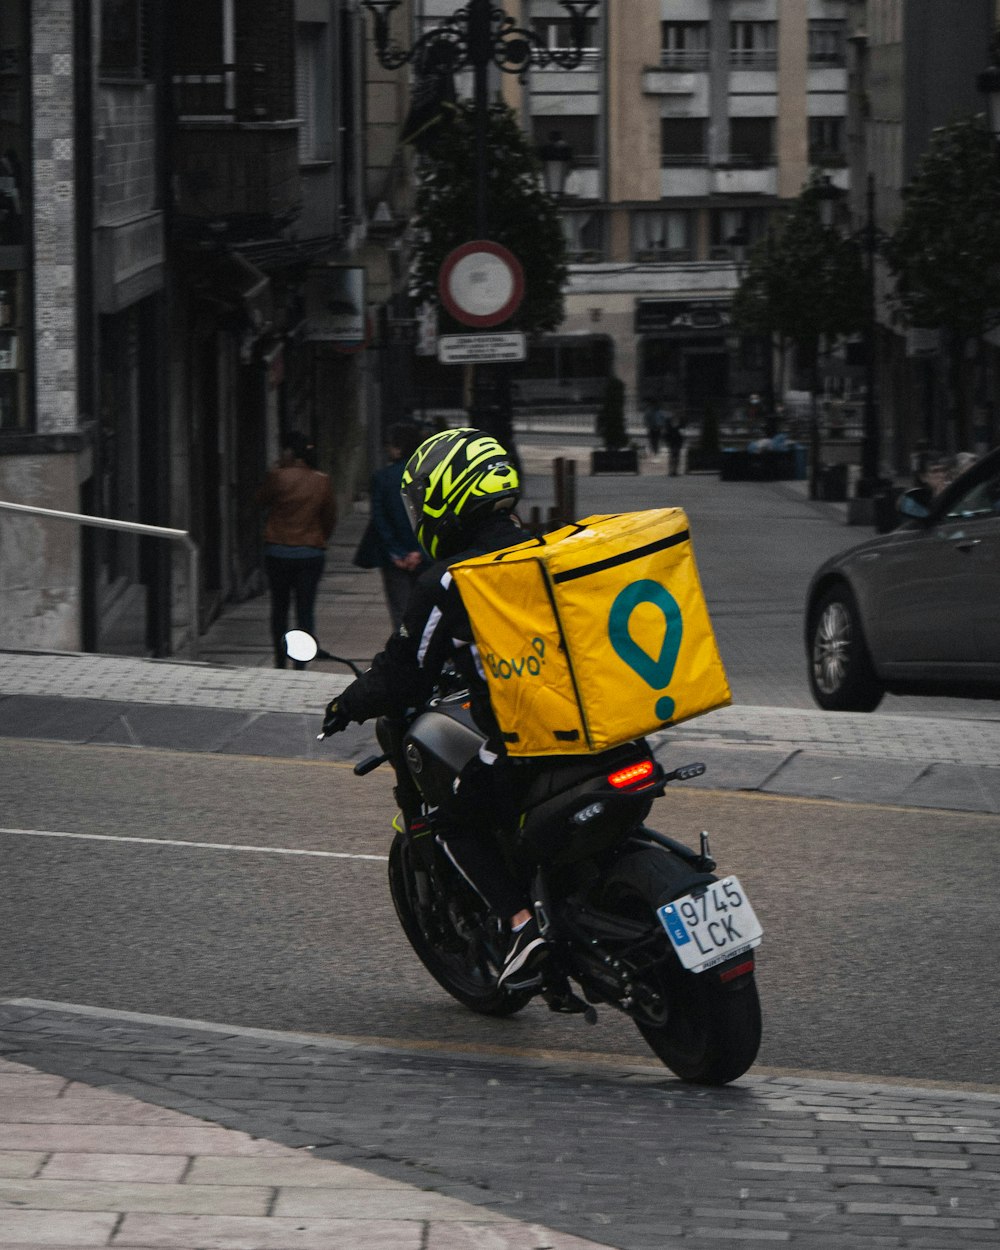 homme au casque jaune conduisant une moto noire sur la route pendant la journée